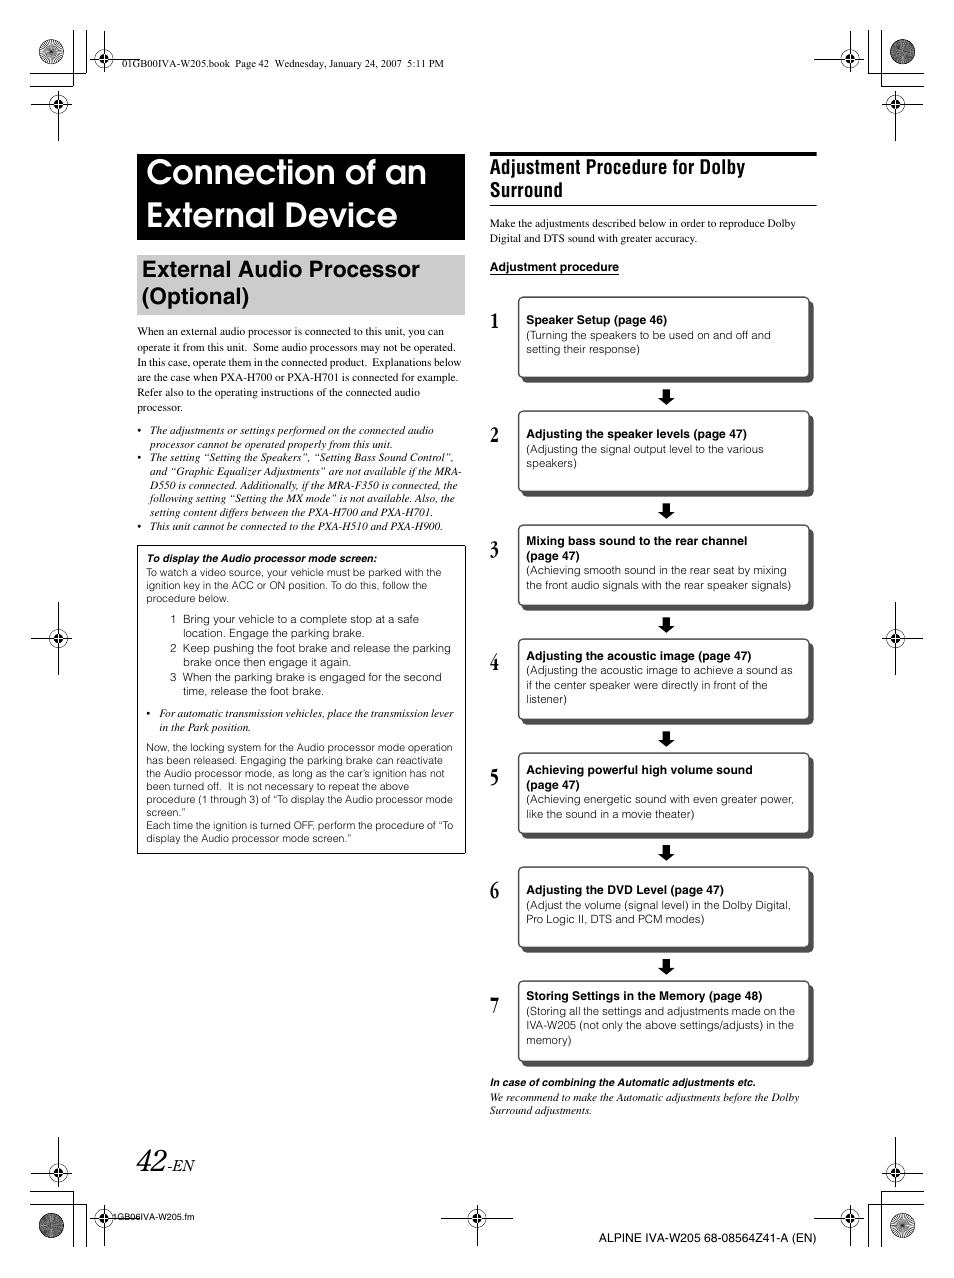 IVA W205 MANUAL PDF